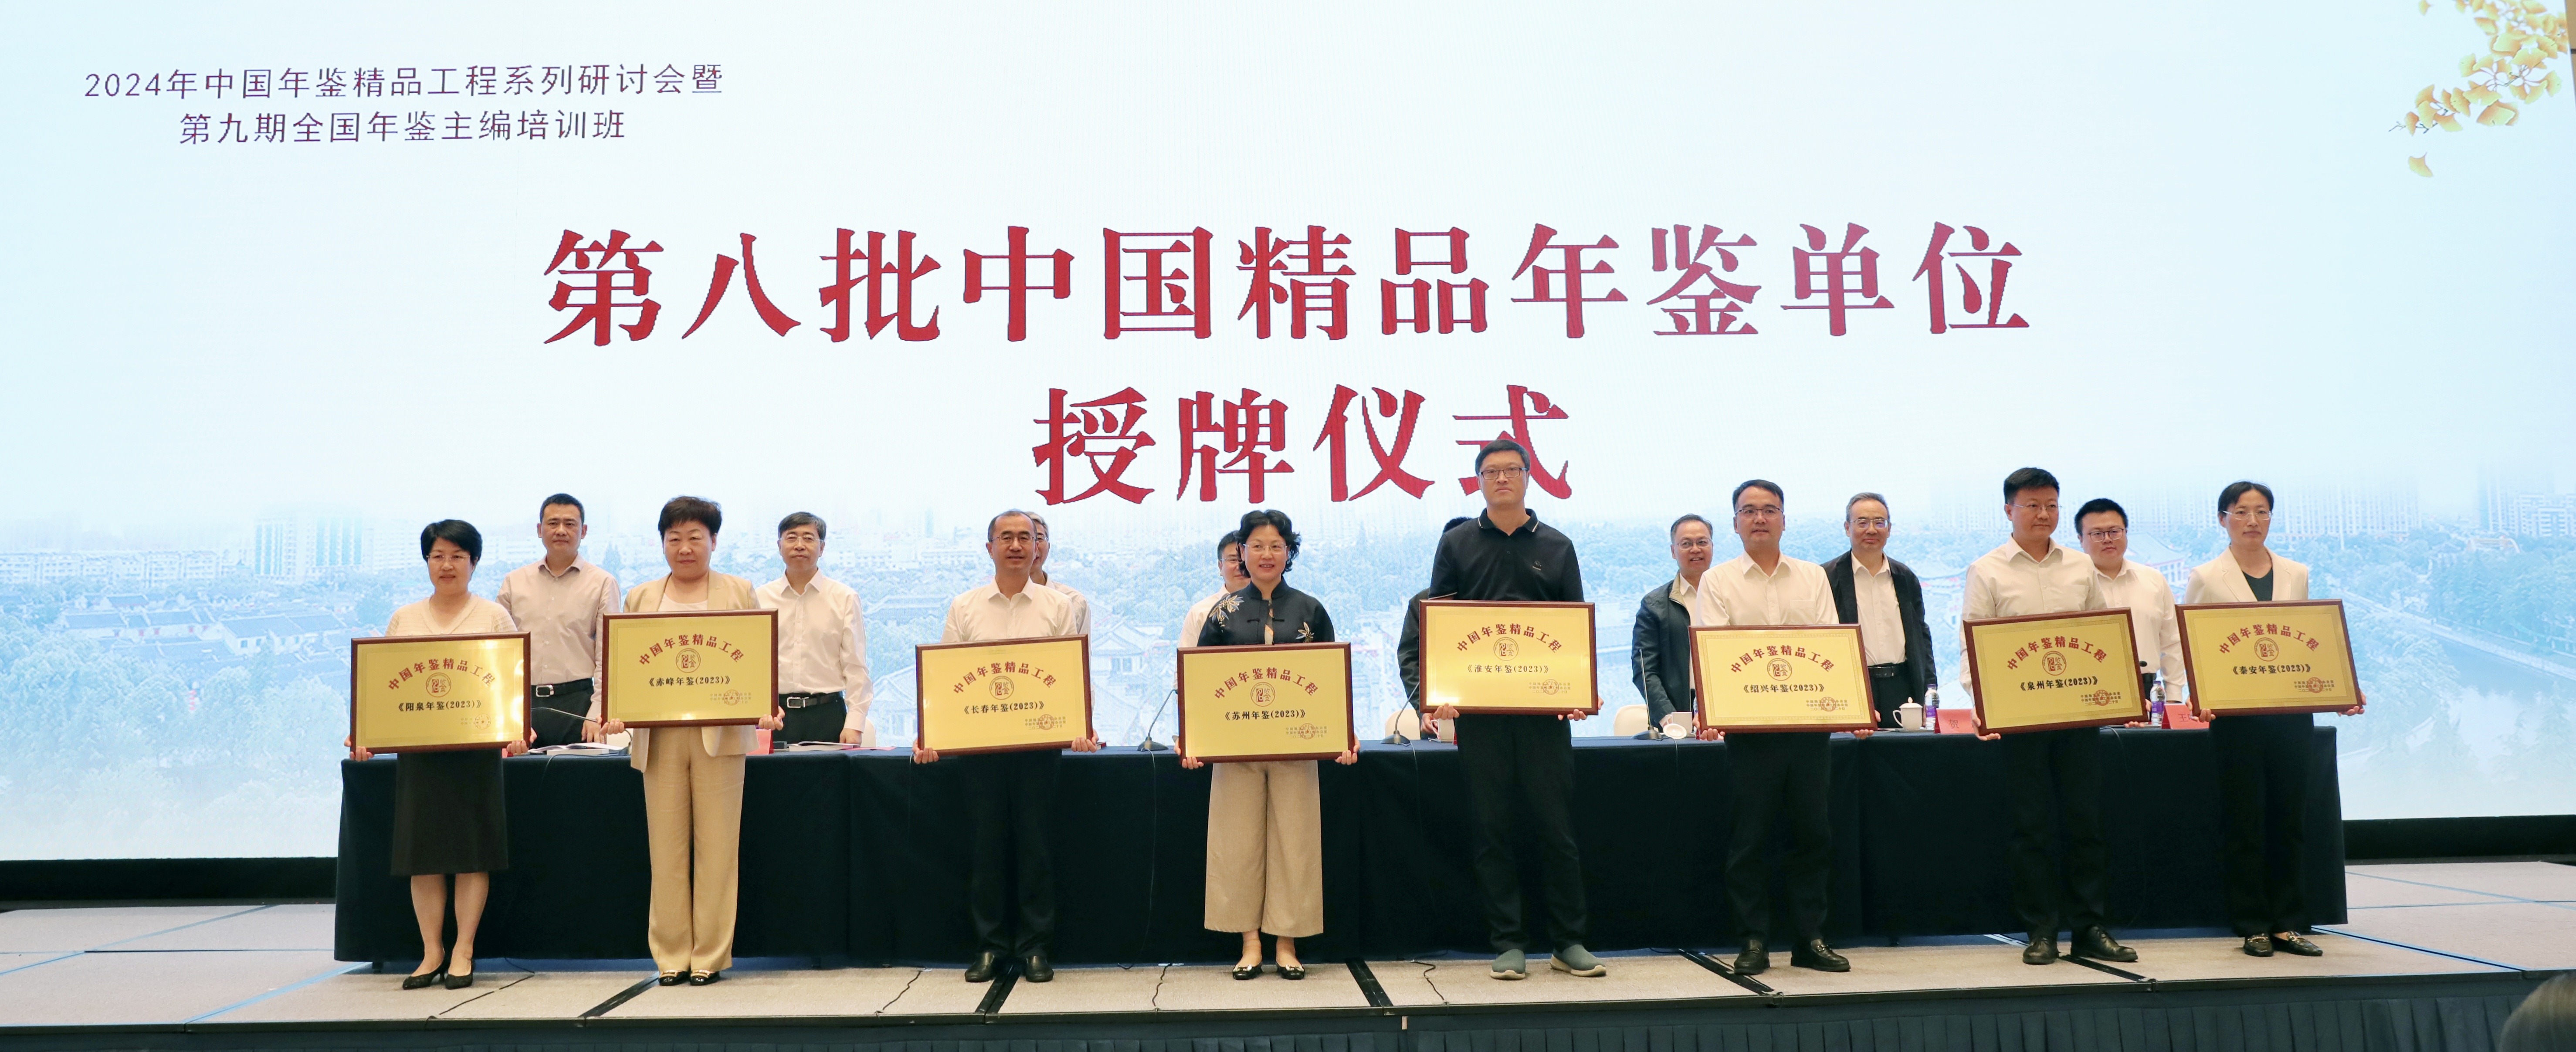 苏州市地方志办公室接受中国精品年鉴授牌